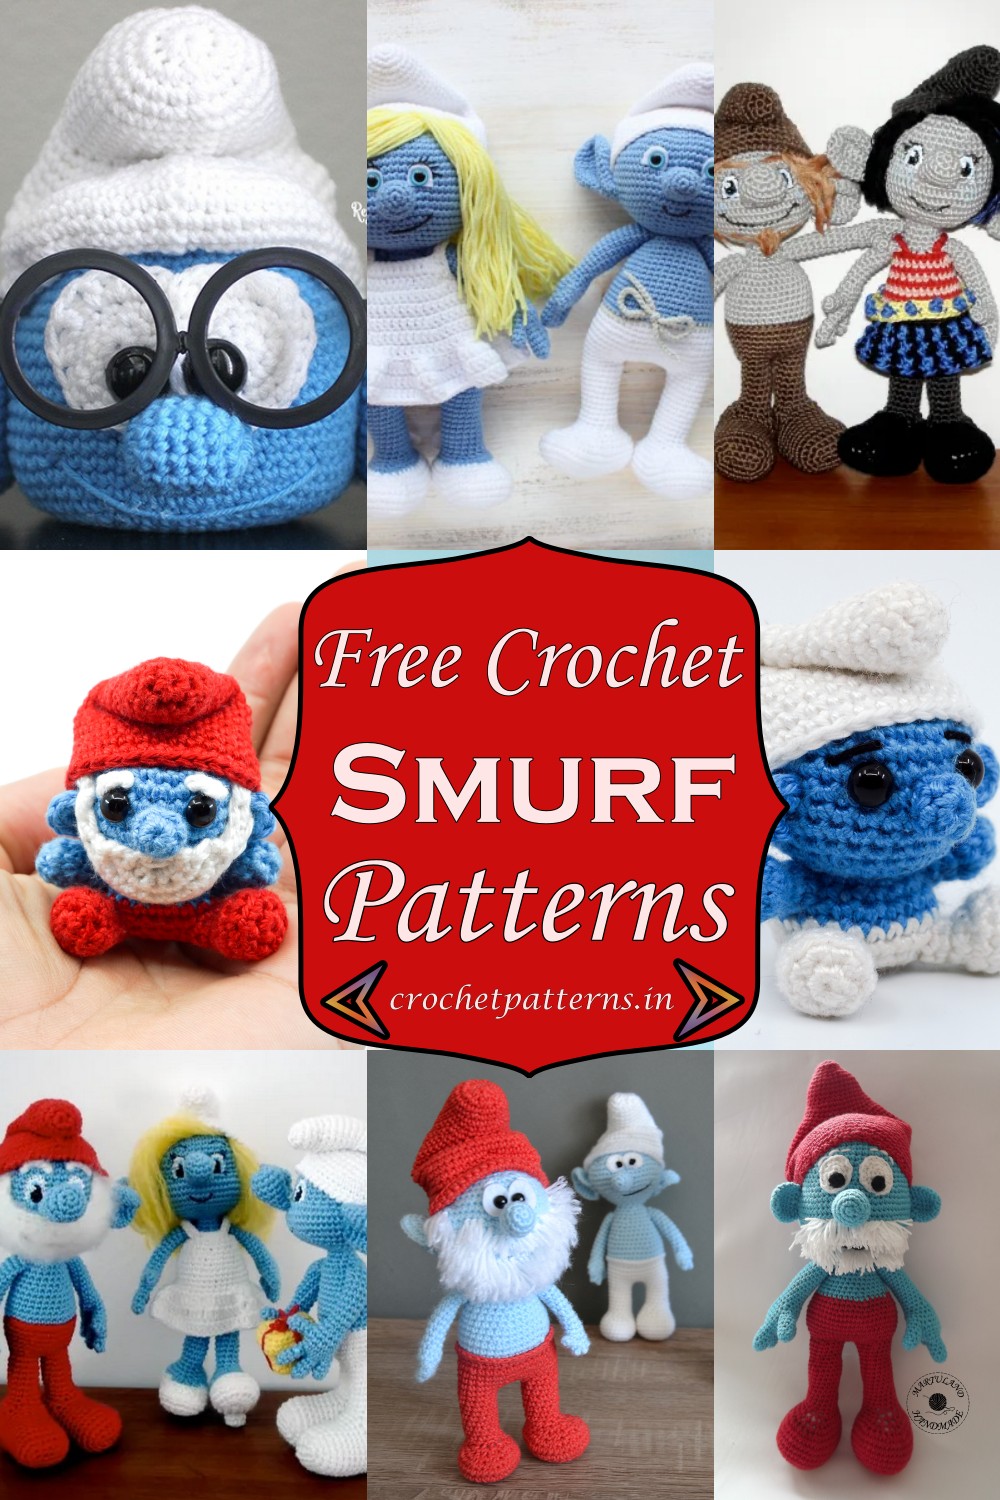 Free Crochet Smurf Patterns